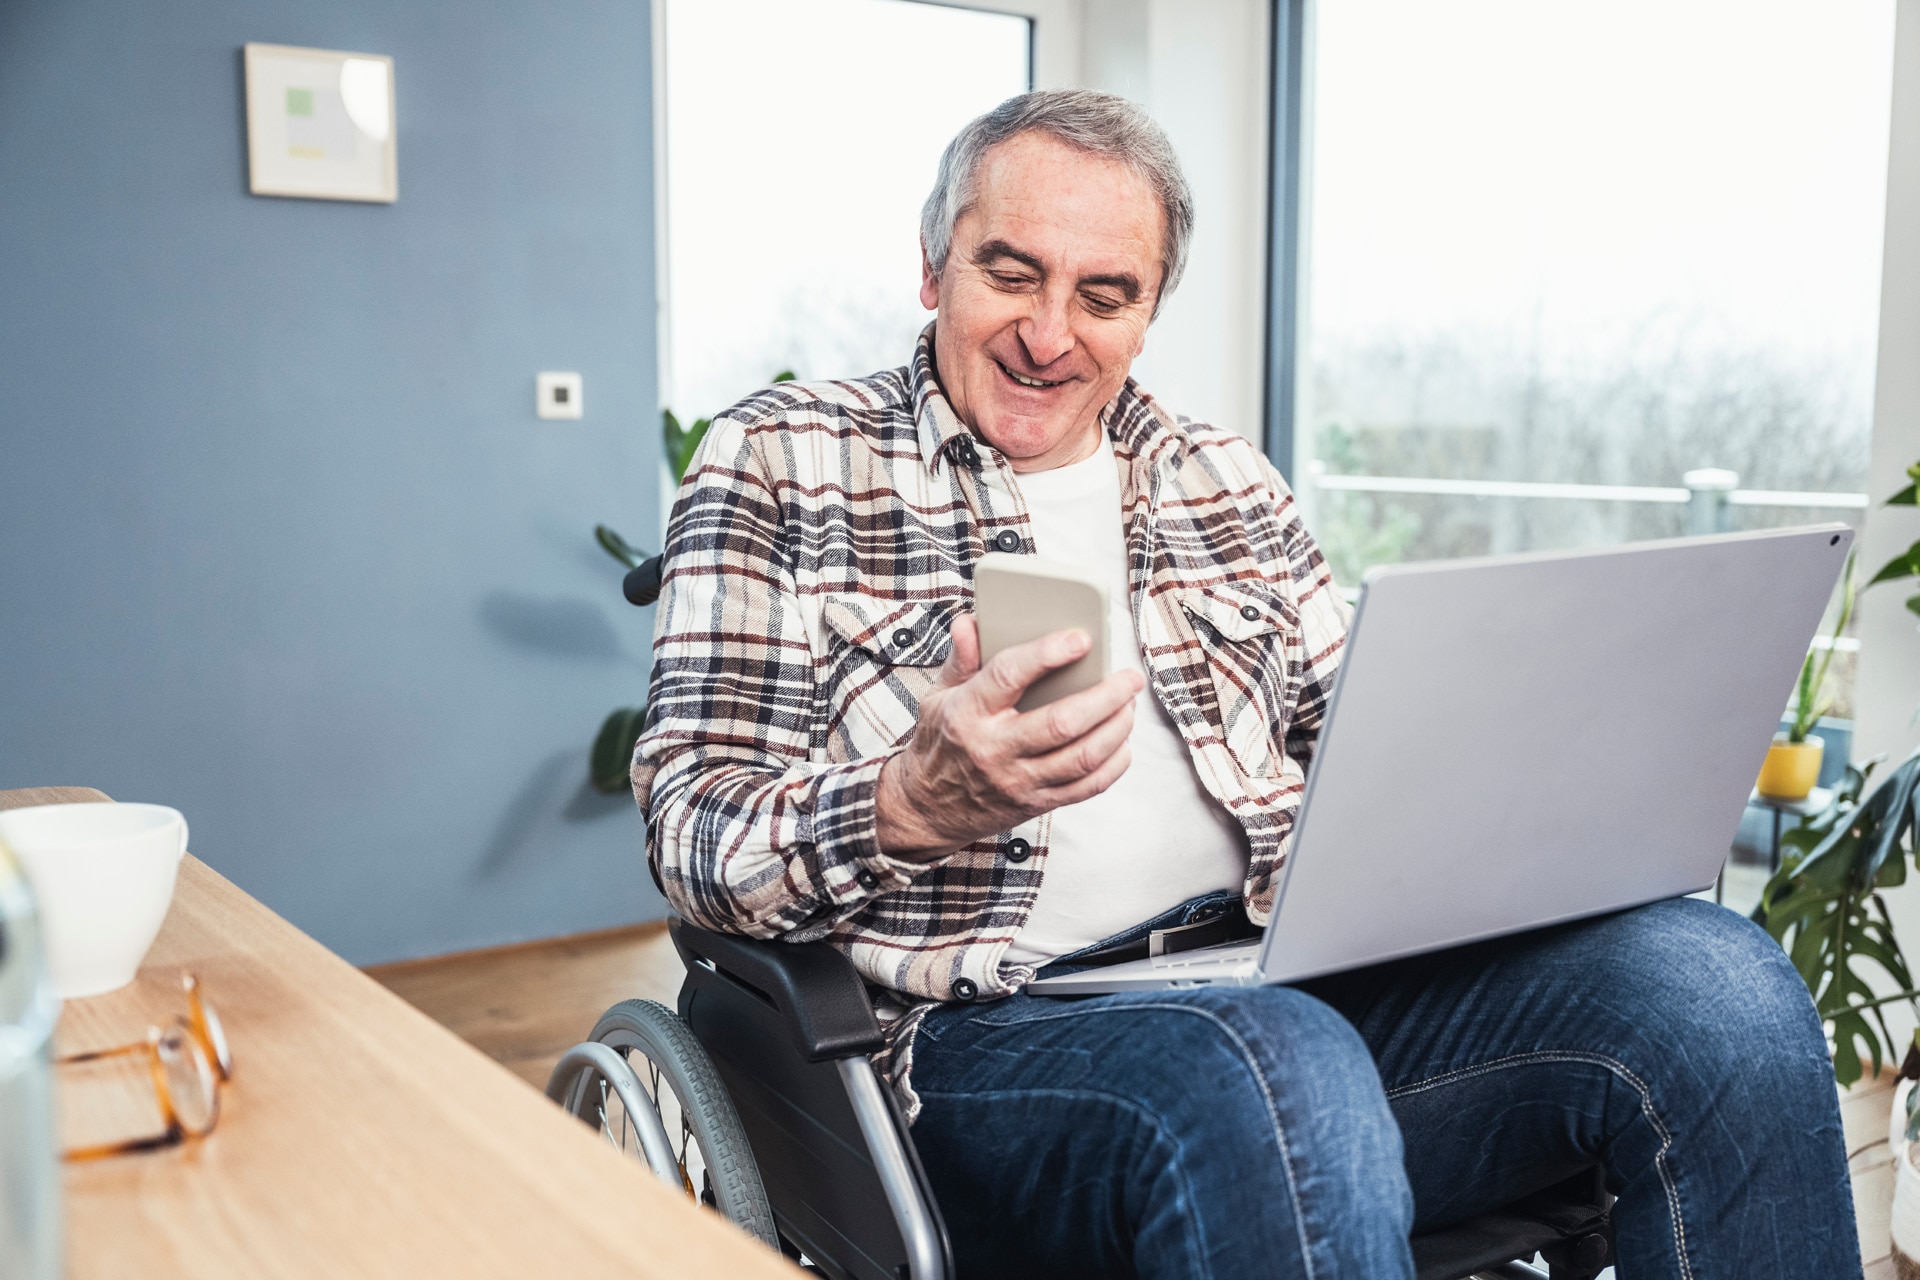 Homme en situation de handicap souriant avec ordinateur portable en train d’utiliser un téléphone alors qu’il est assis dans un fauteuil roulant à la maison